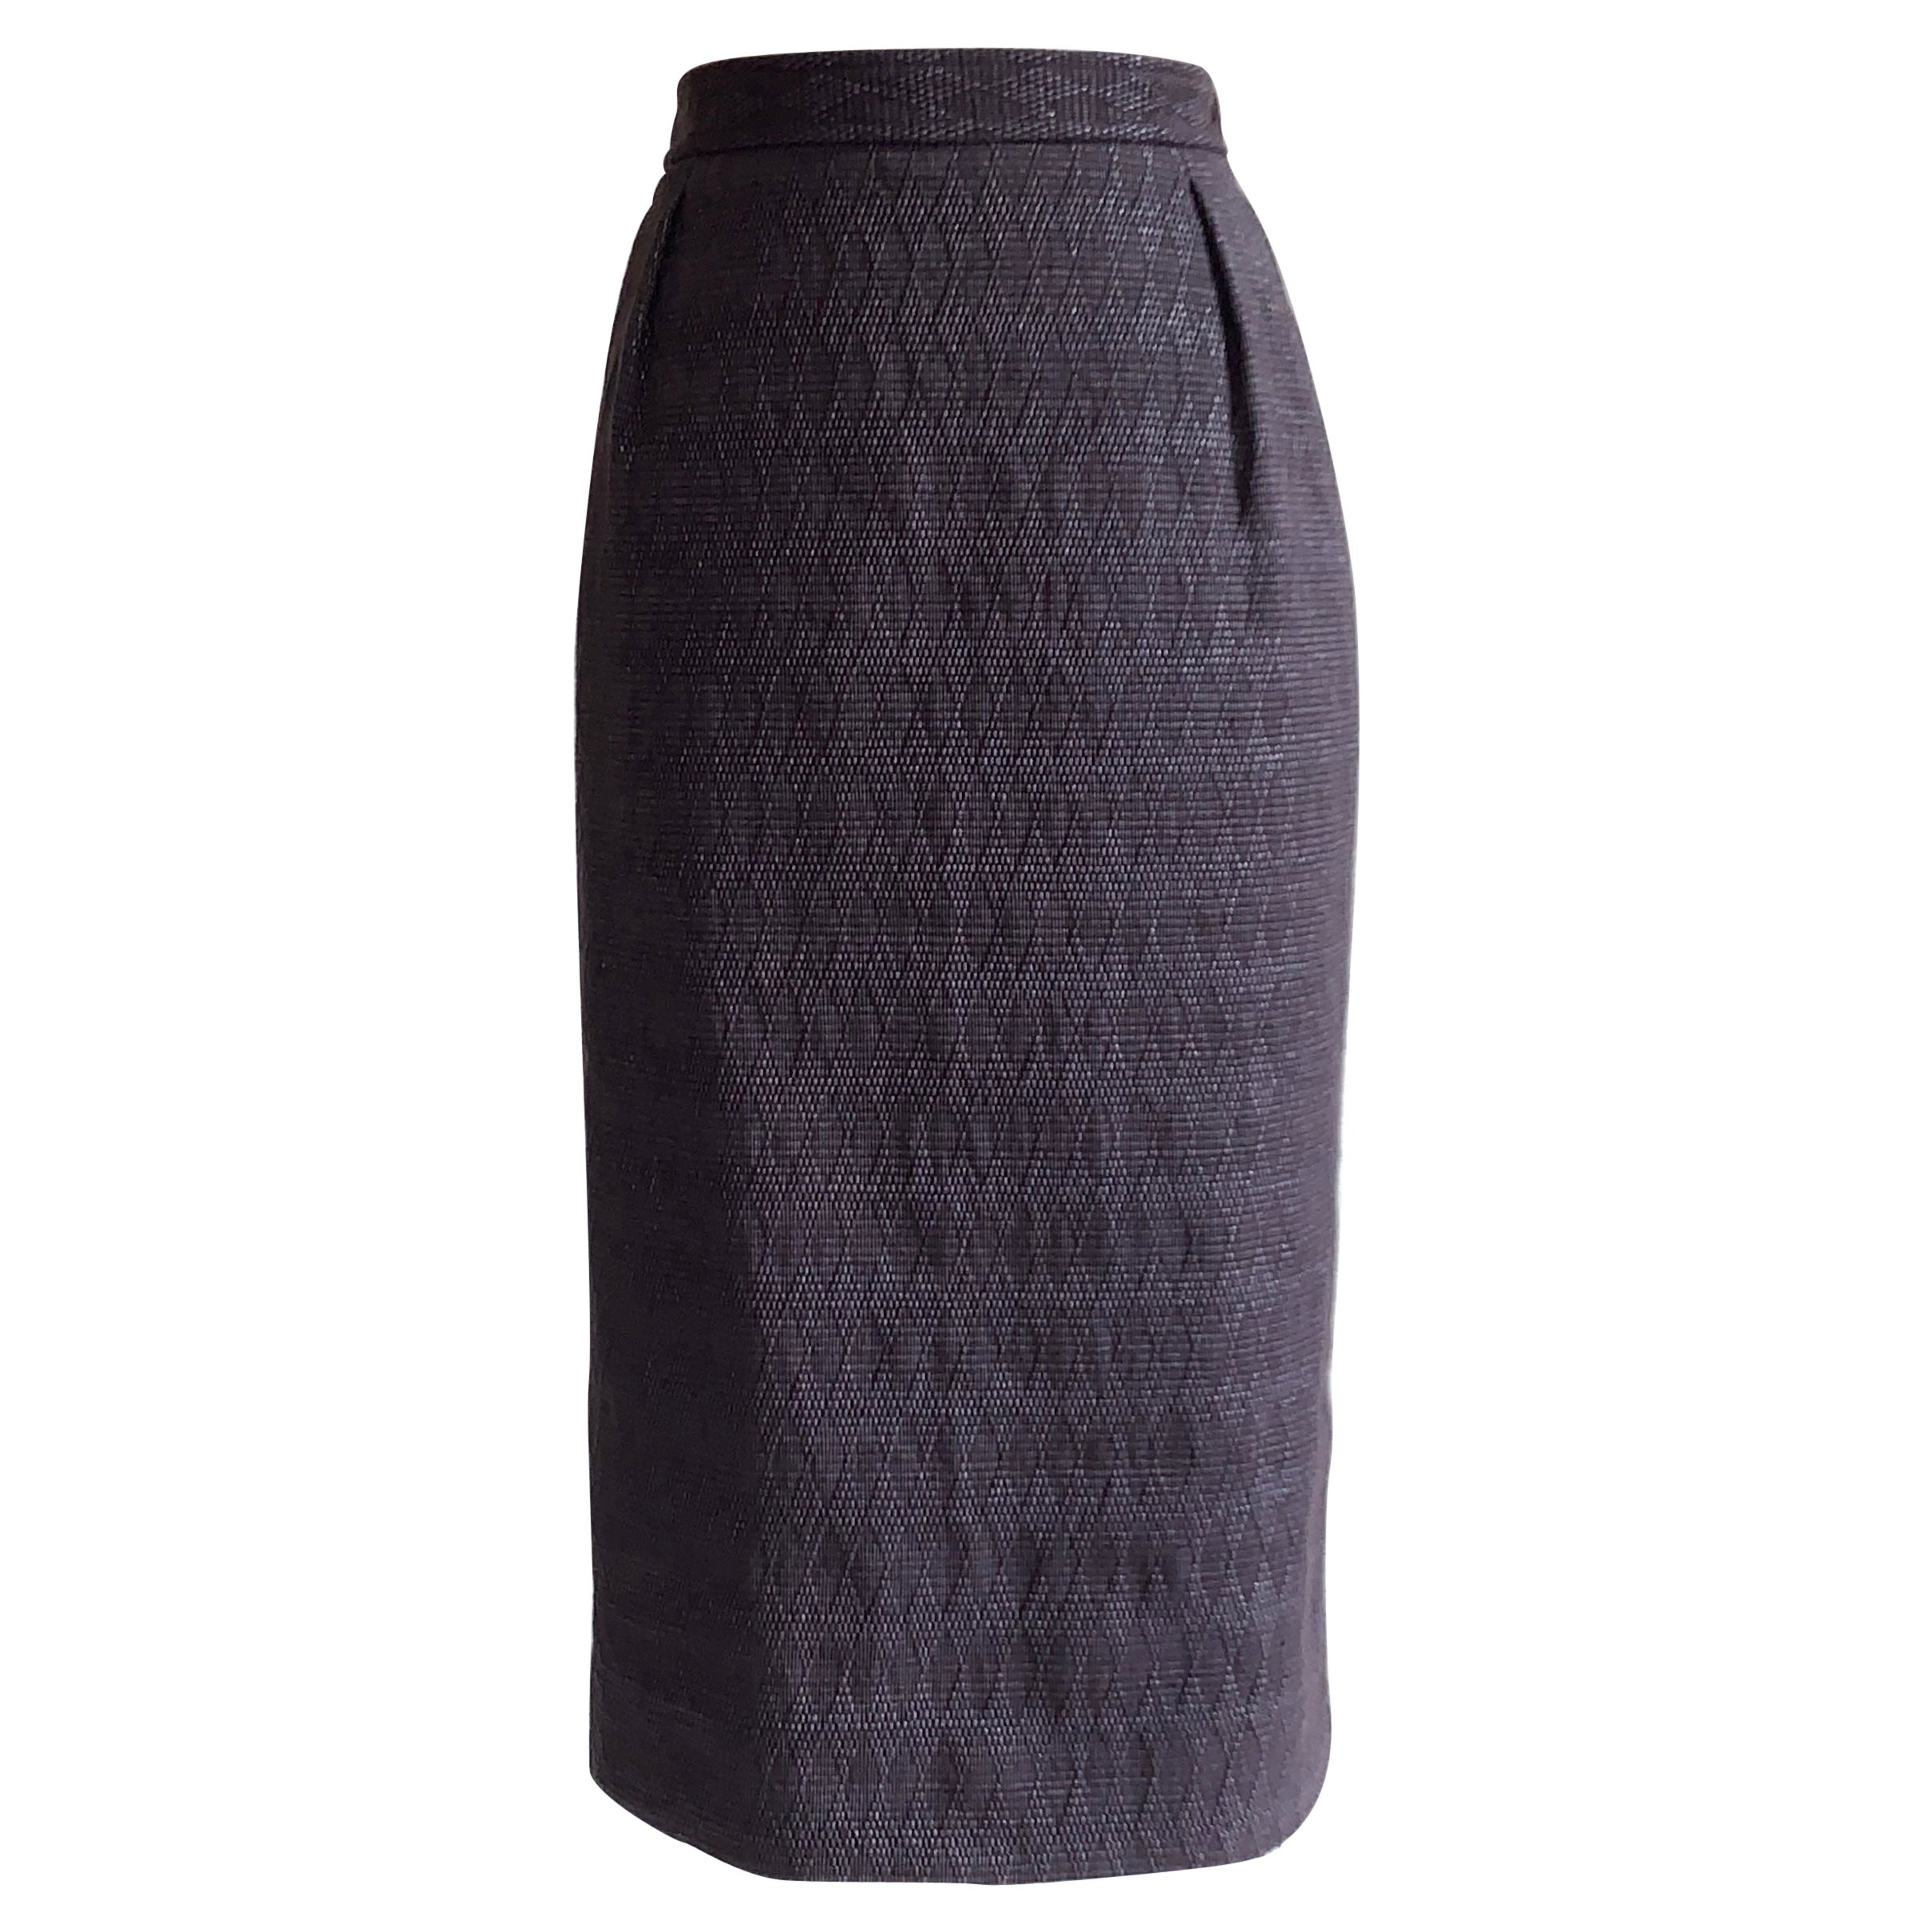 2000s Yves Saint Laurent Rive Gauche Purple Diamond Weave Pencil Skirt For Sale